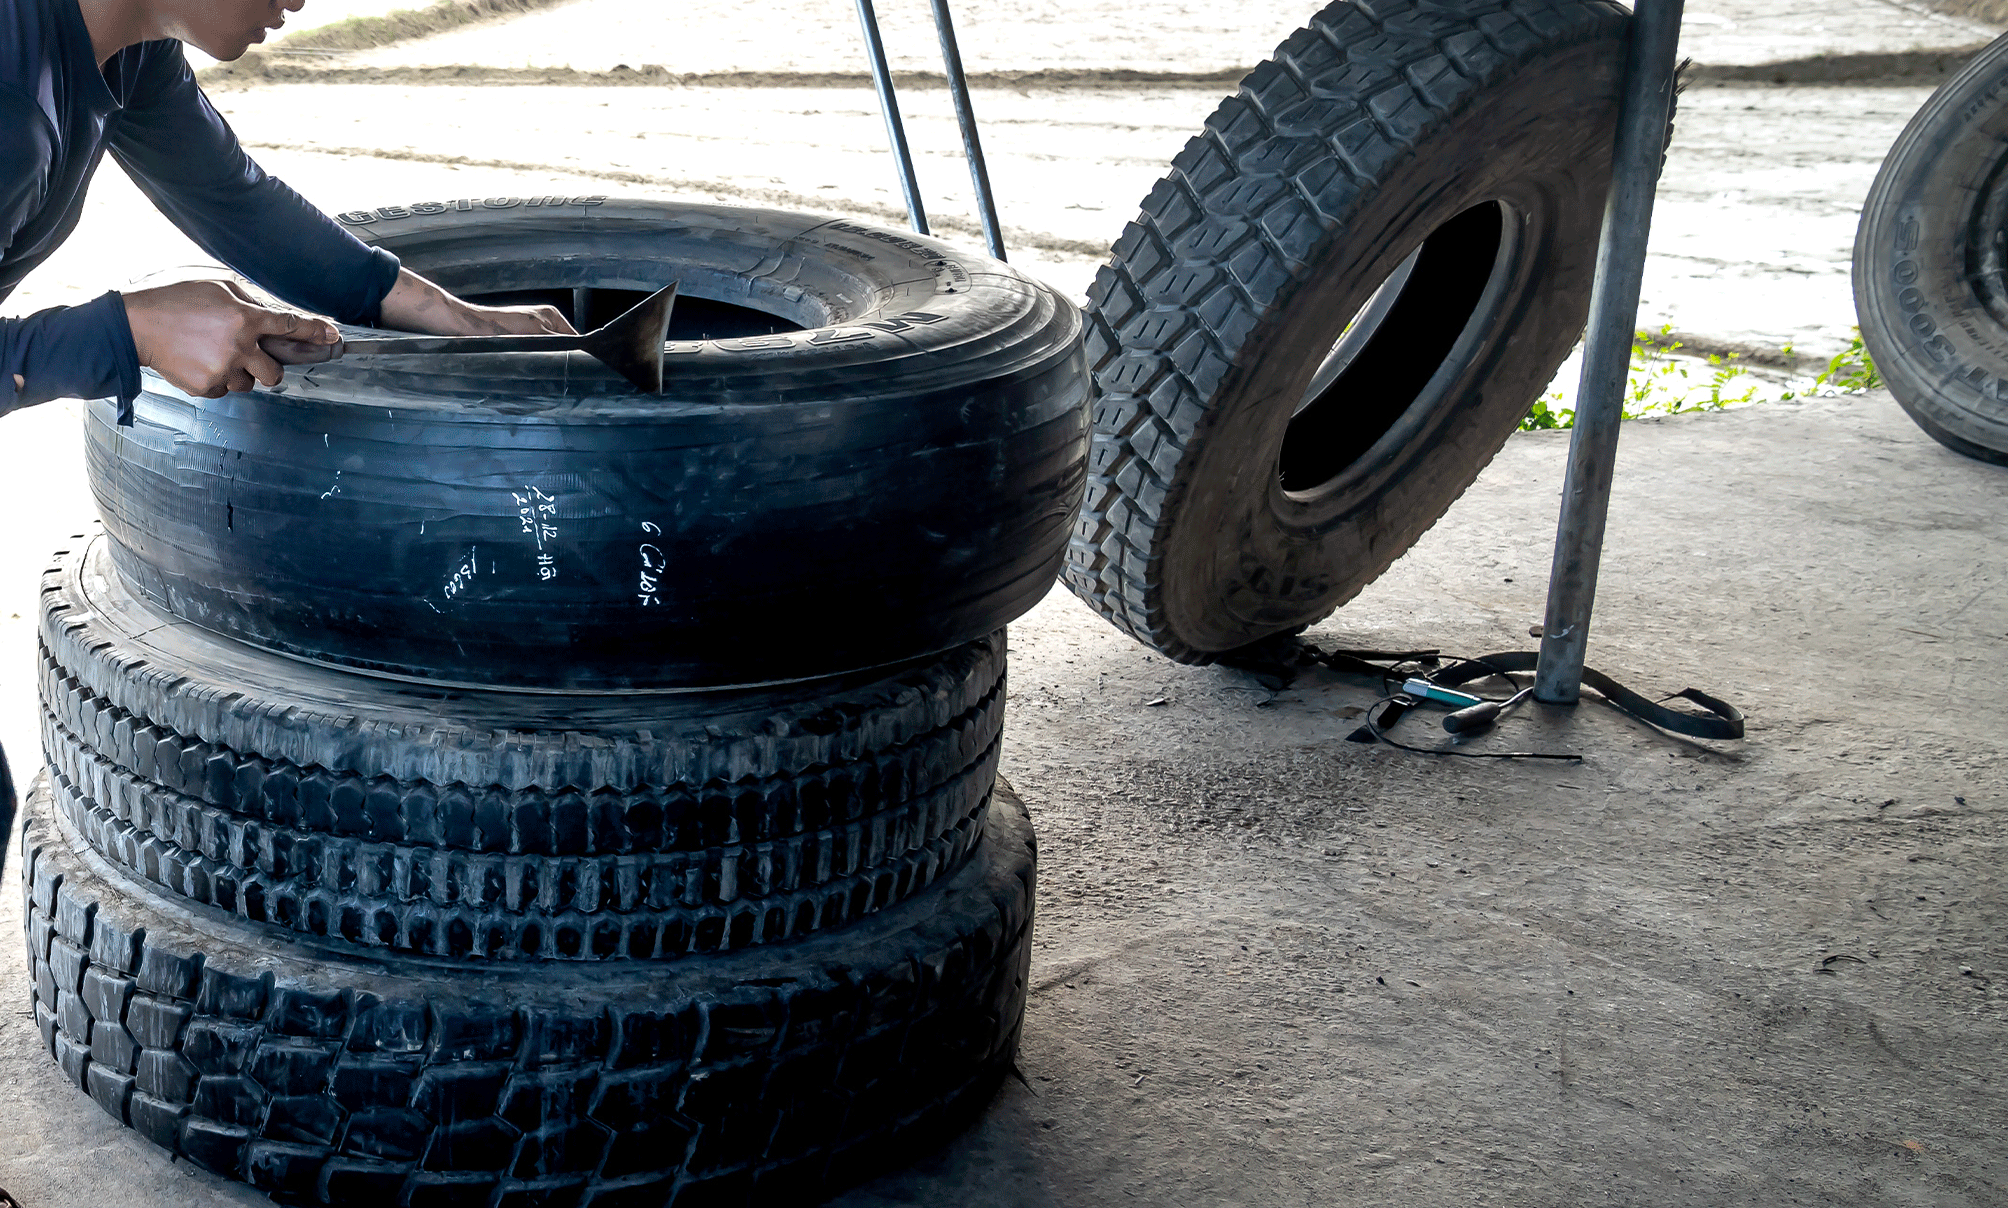 Allonger la durée de vie de ses pneus : Rechapage ou recreusage ?